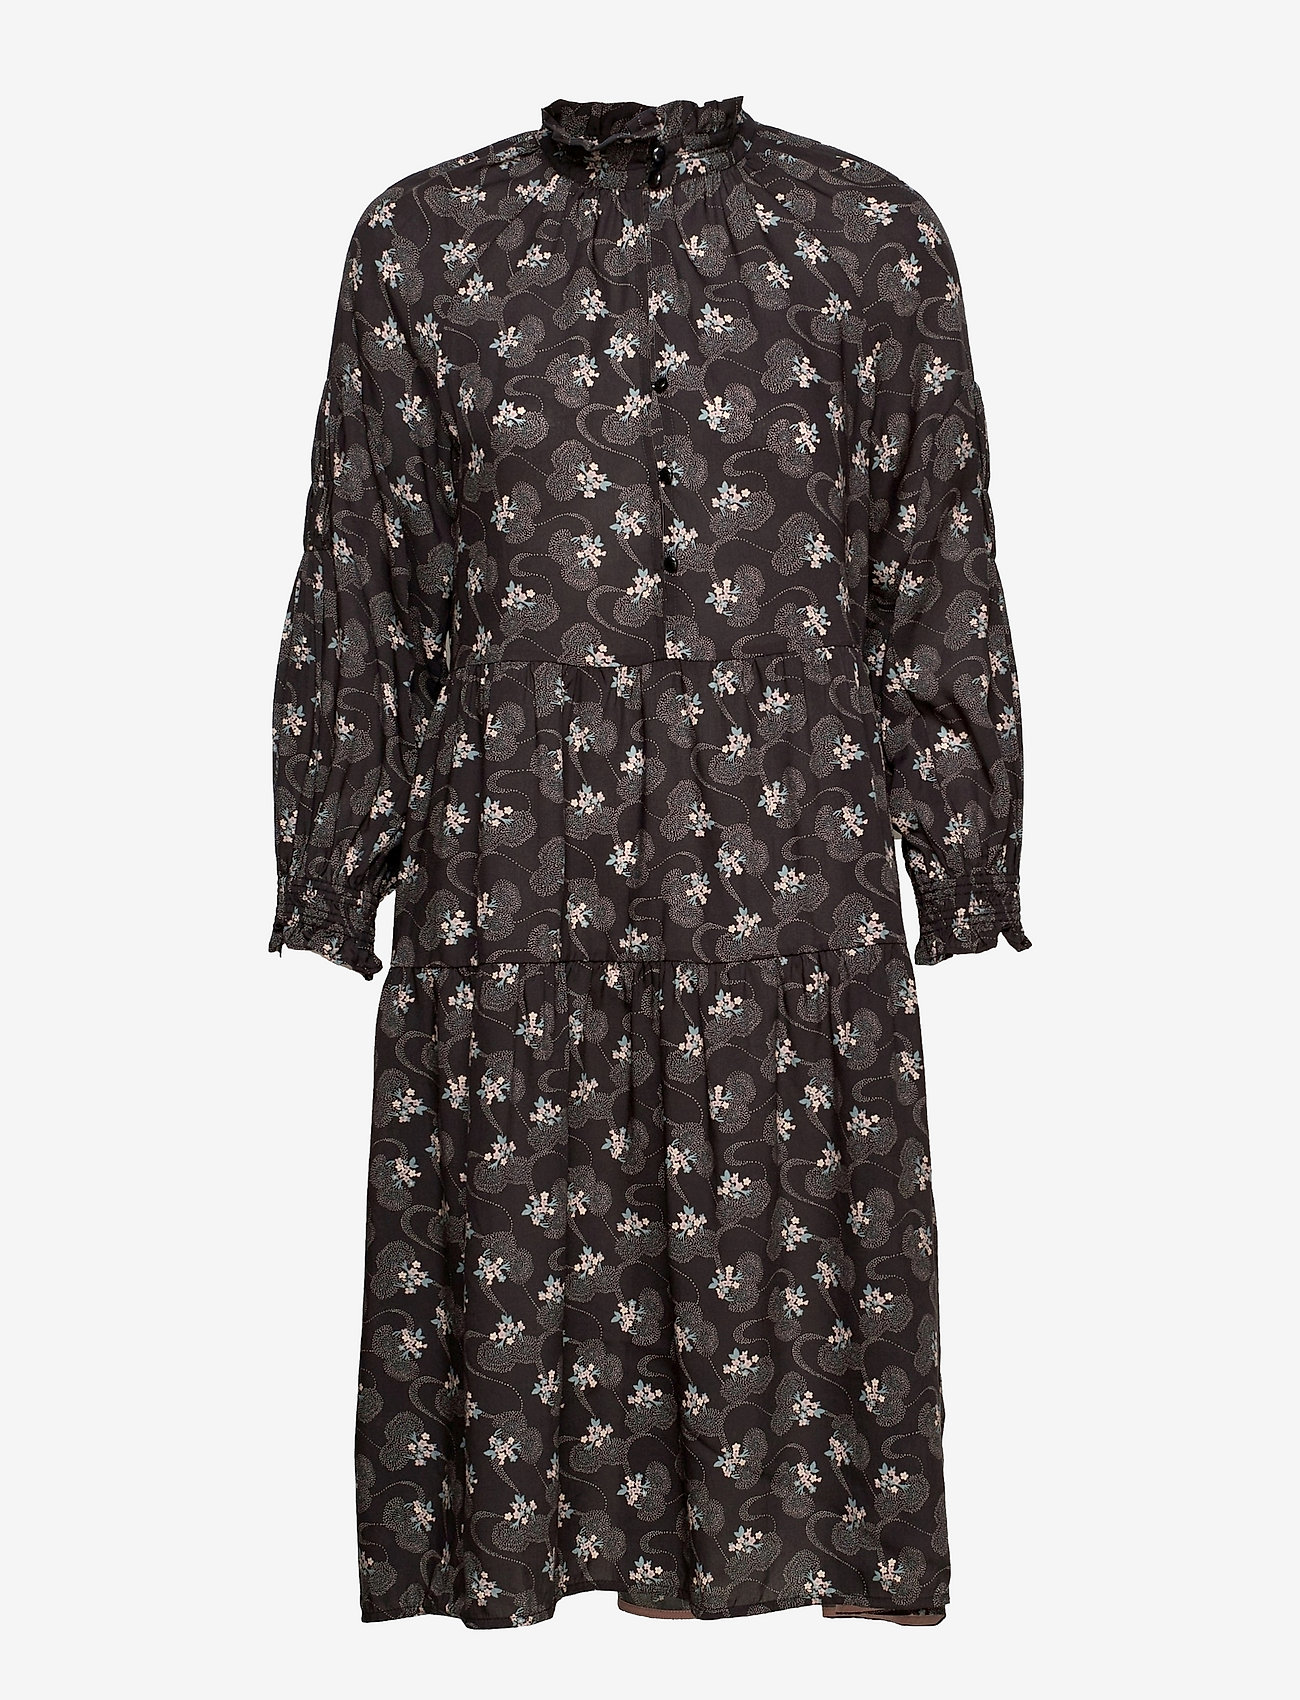 Noa Noa - Dress long sleeve - midikjoler - print black - 0